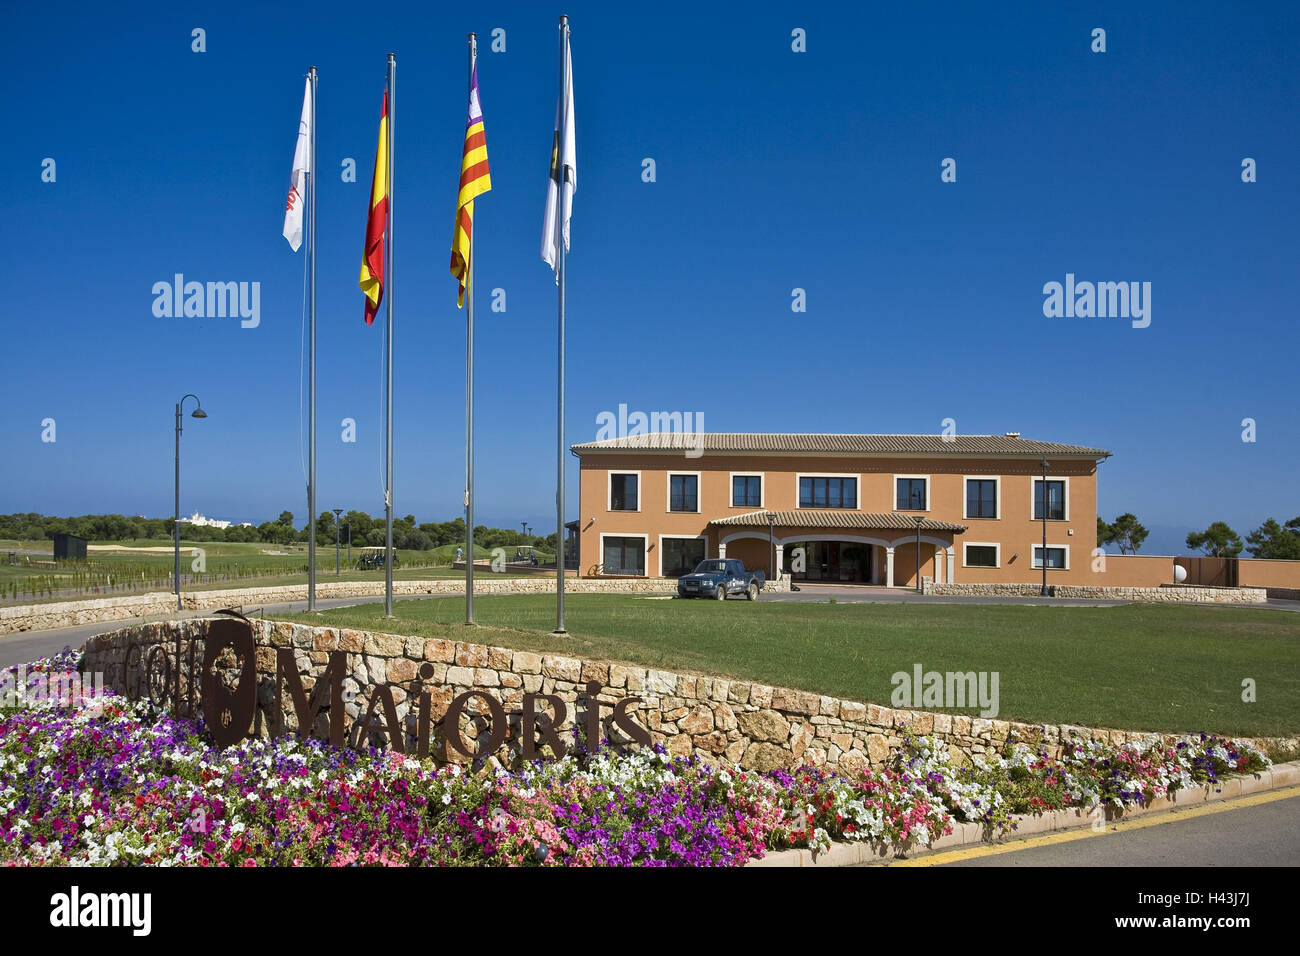 Spain, the Balearic Islands, island Majorca, Maioris, golf course, club house, flags, flowers, Stock Photo